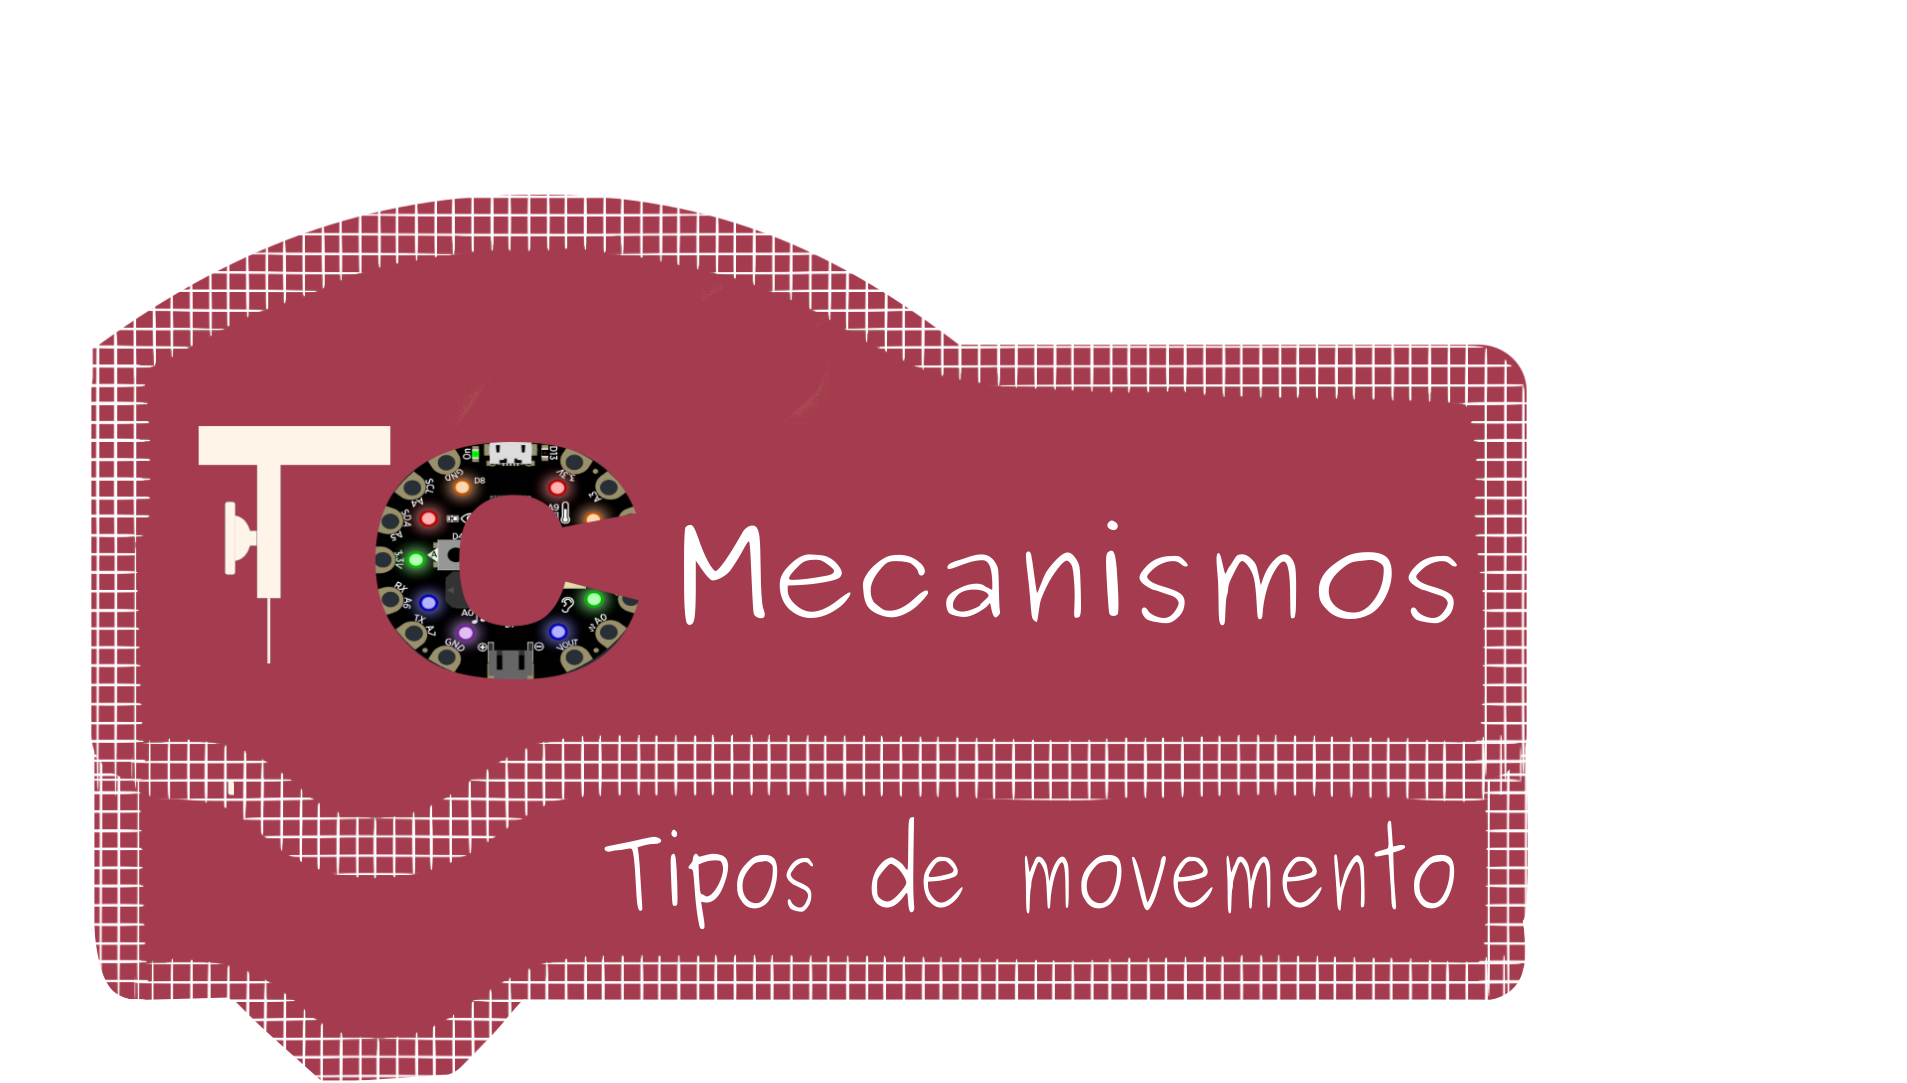 Mecanismos: tipos de movemento